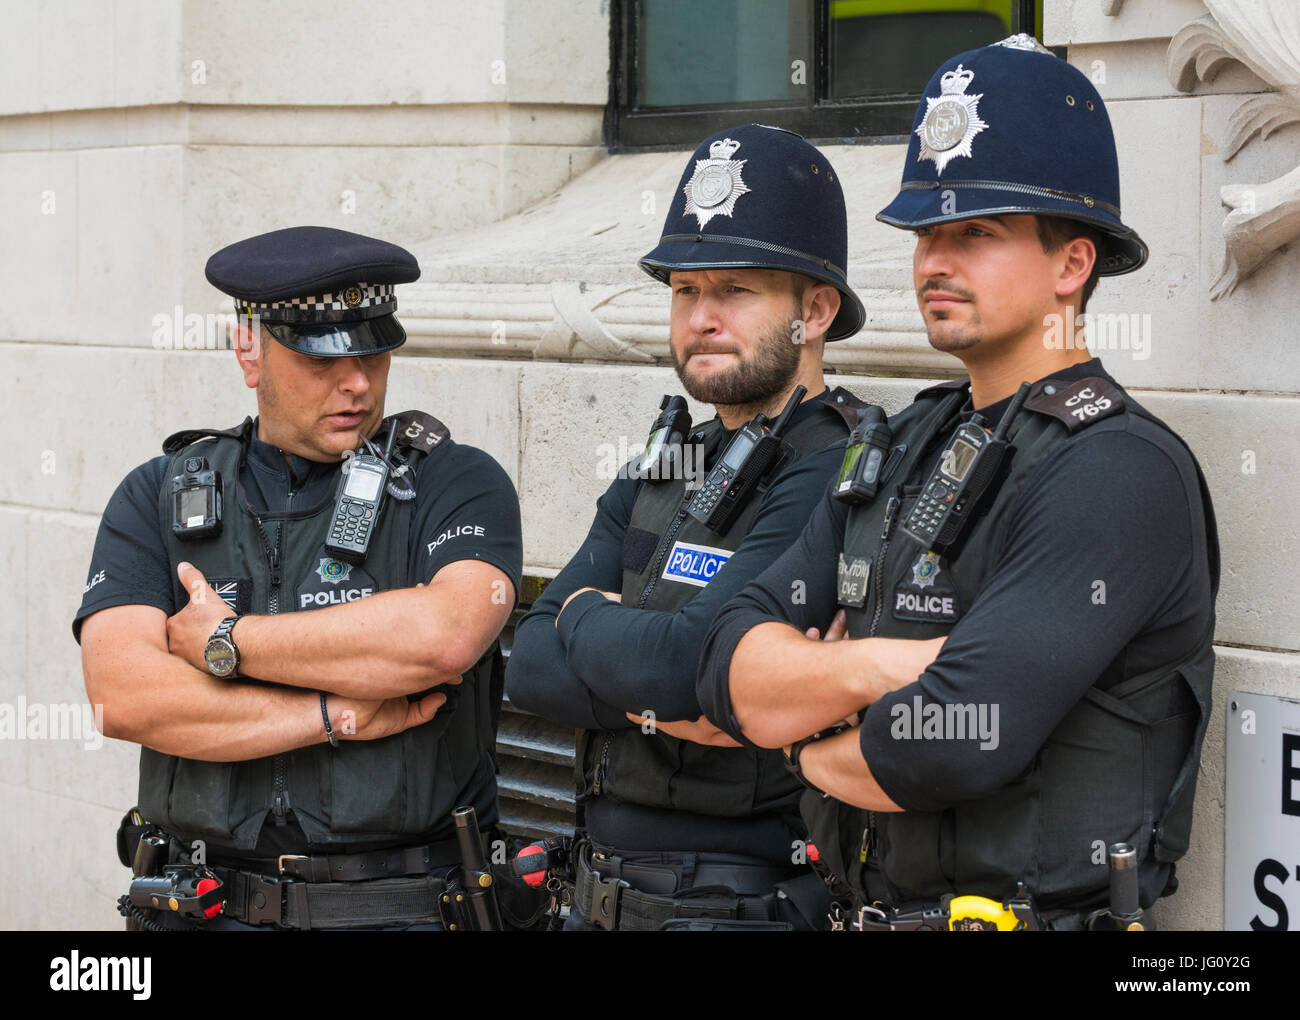 Polizisten stehen gegen eine Wand in einer öffentlichen Veranstaltung im Süden von England, UK. Stockfoto